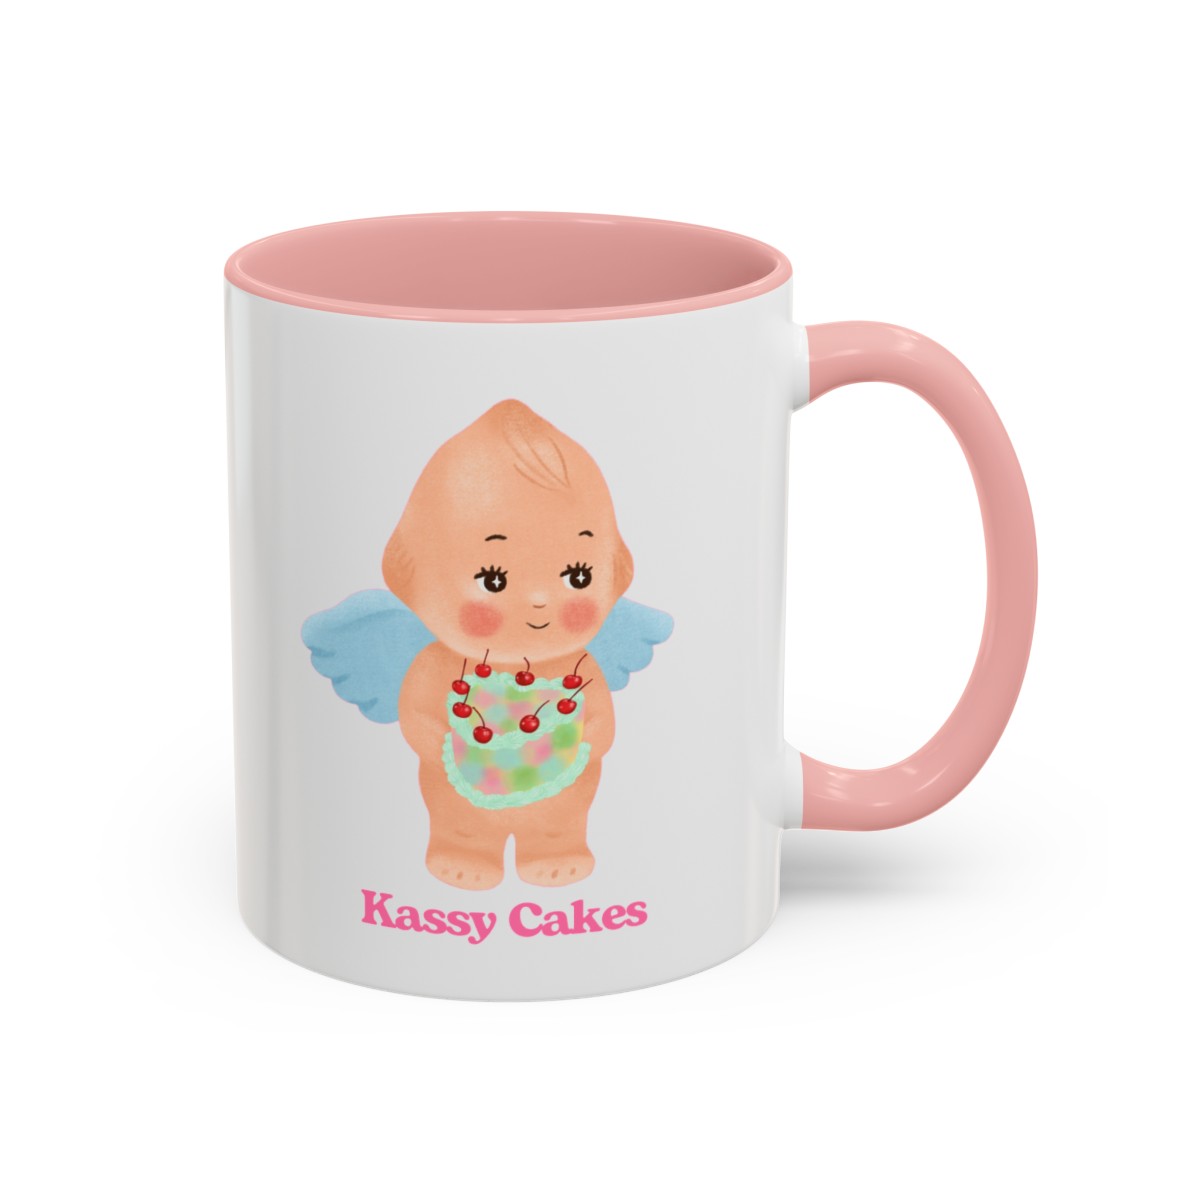 Kassy Cakes Coffee Mug, 11oz product thumbnail image